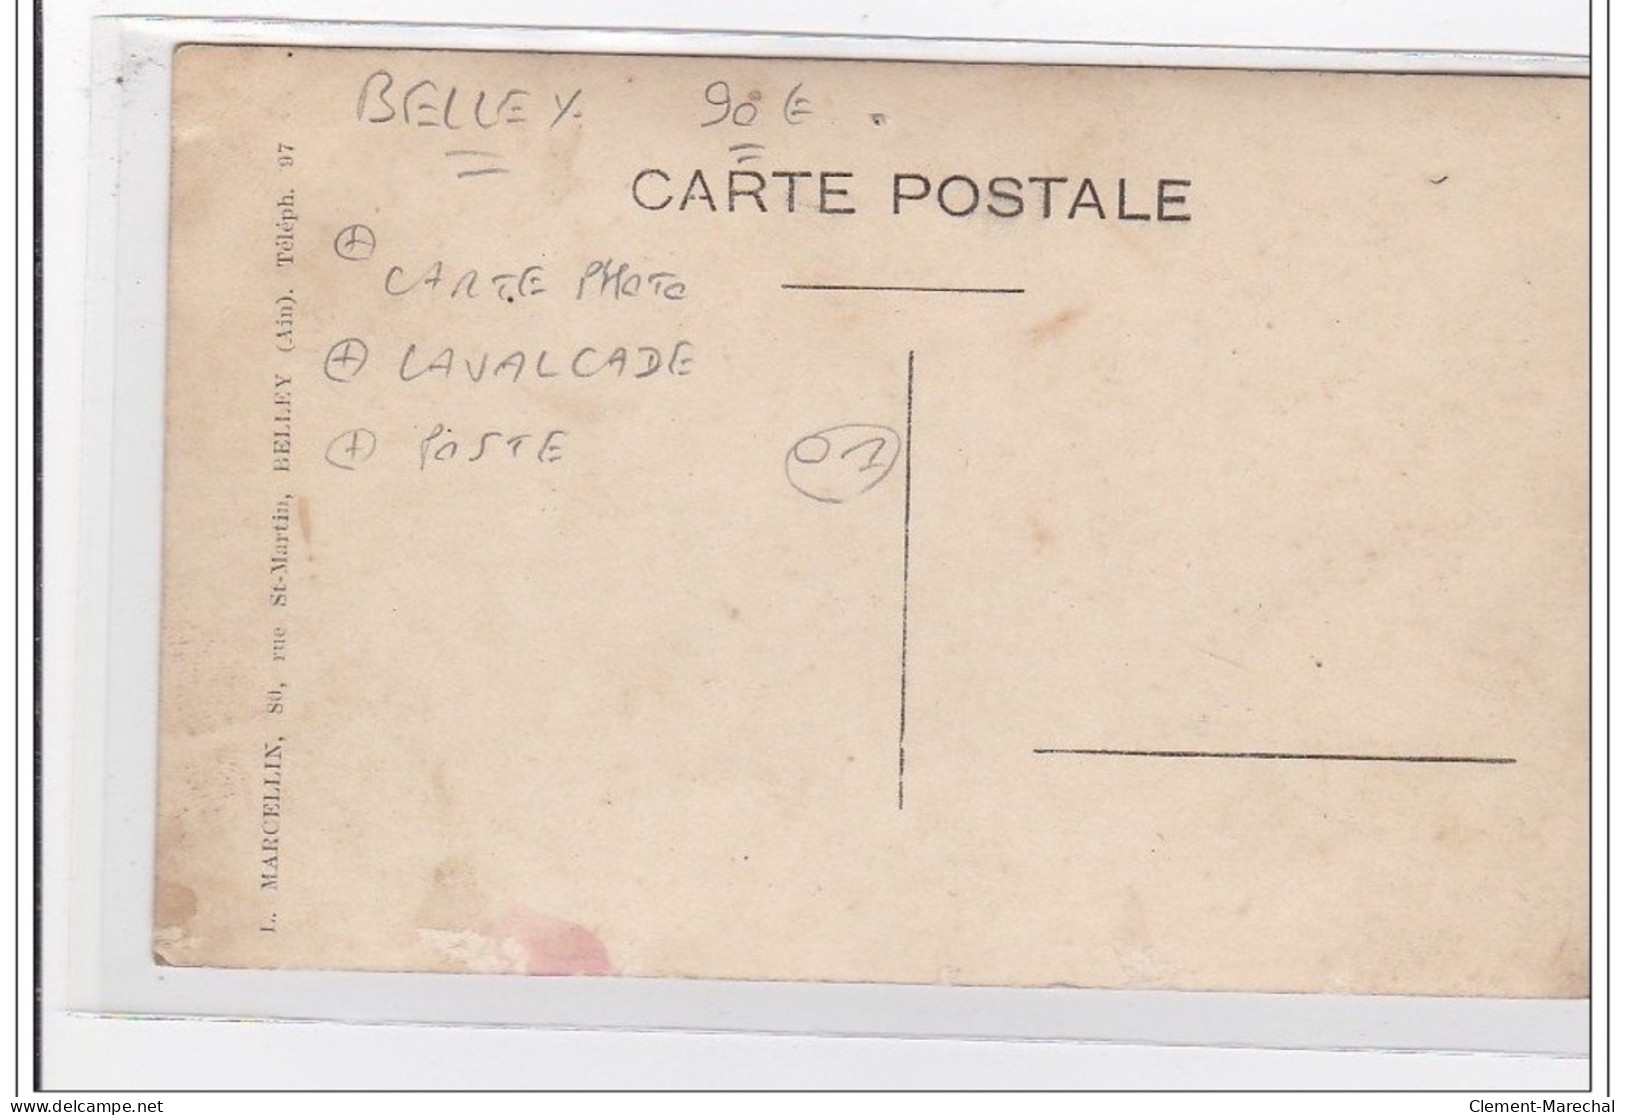 FRANCE : Belley, Carte Photo, Lavalcade, Poste - Tres Bon Etat - Unclassified